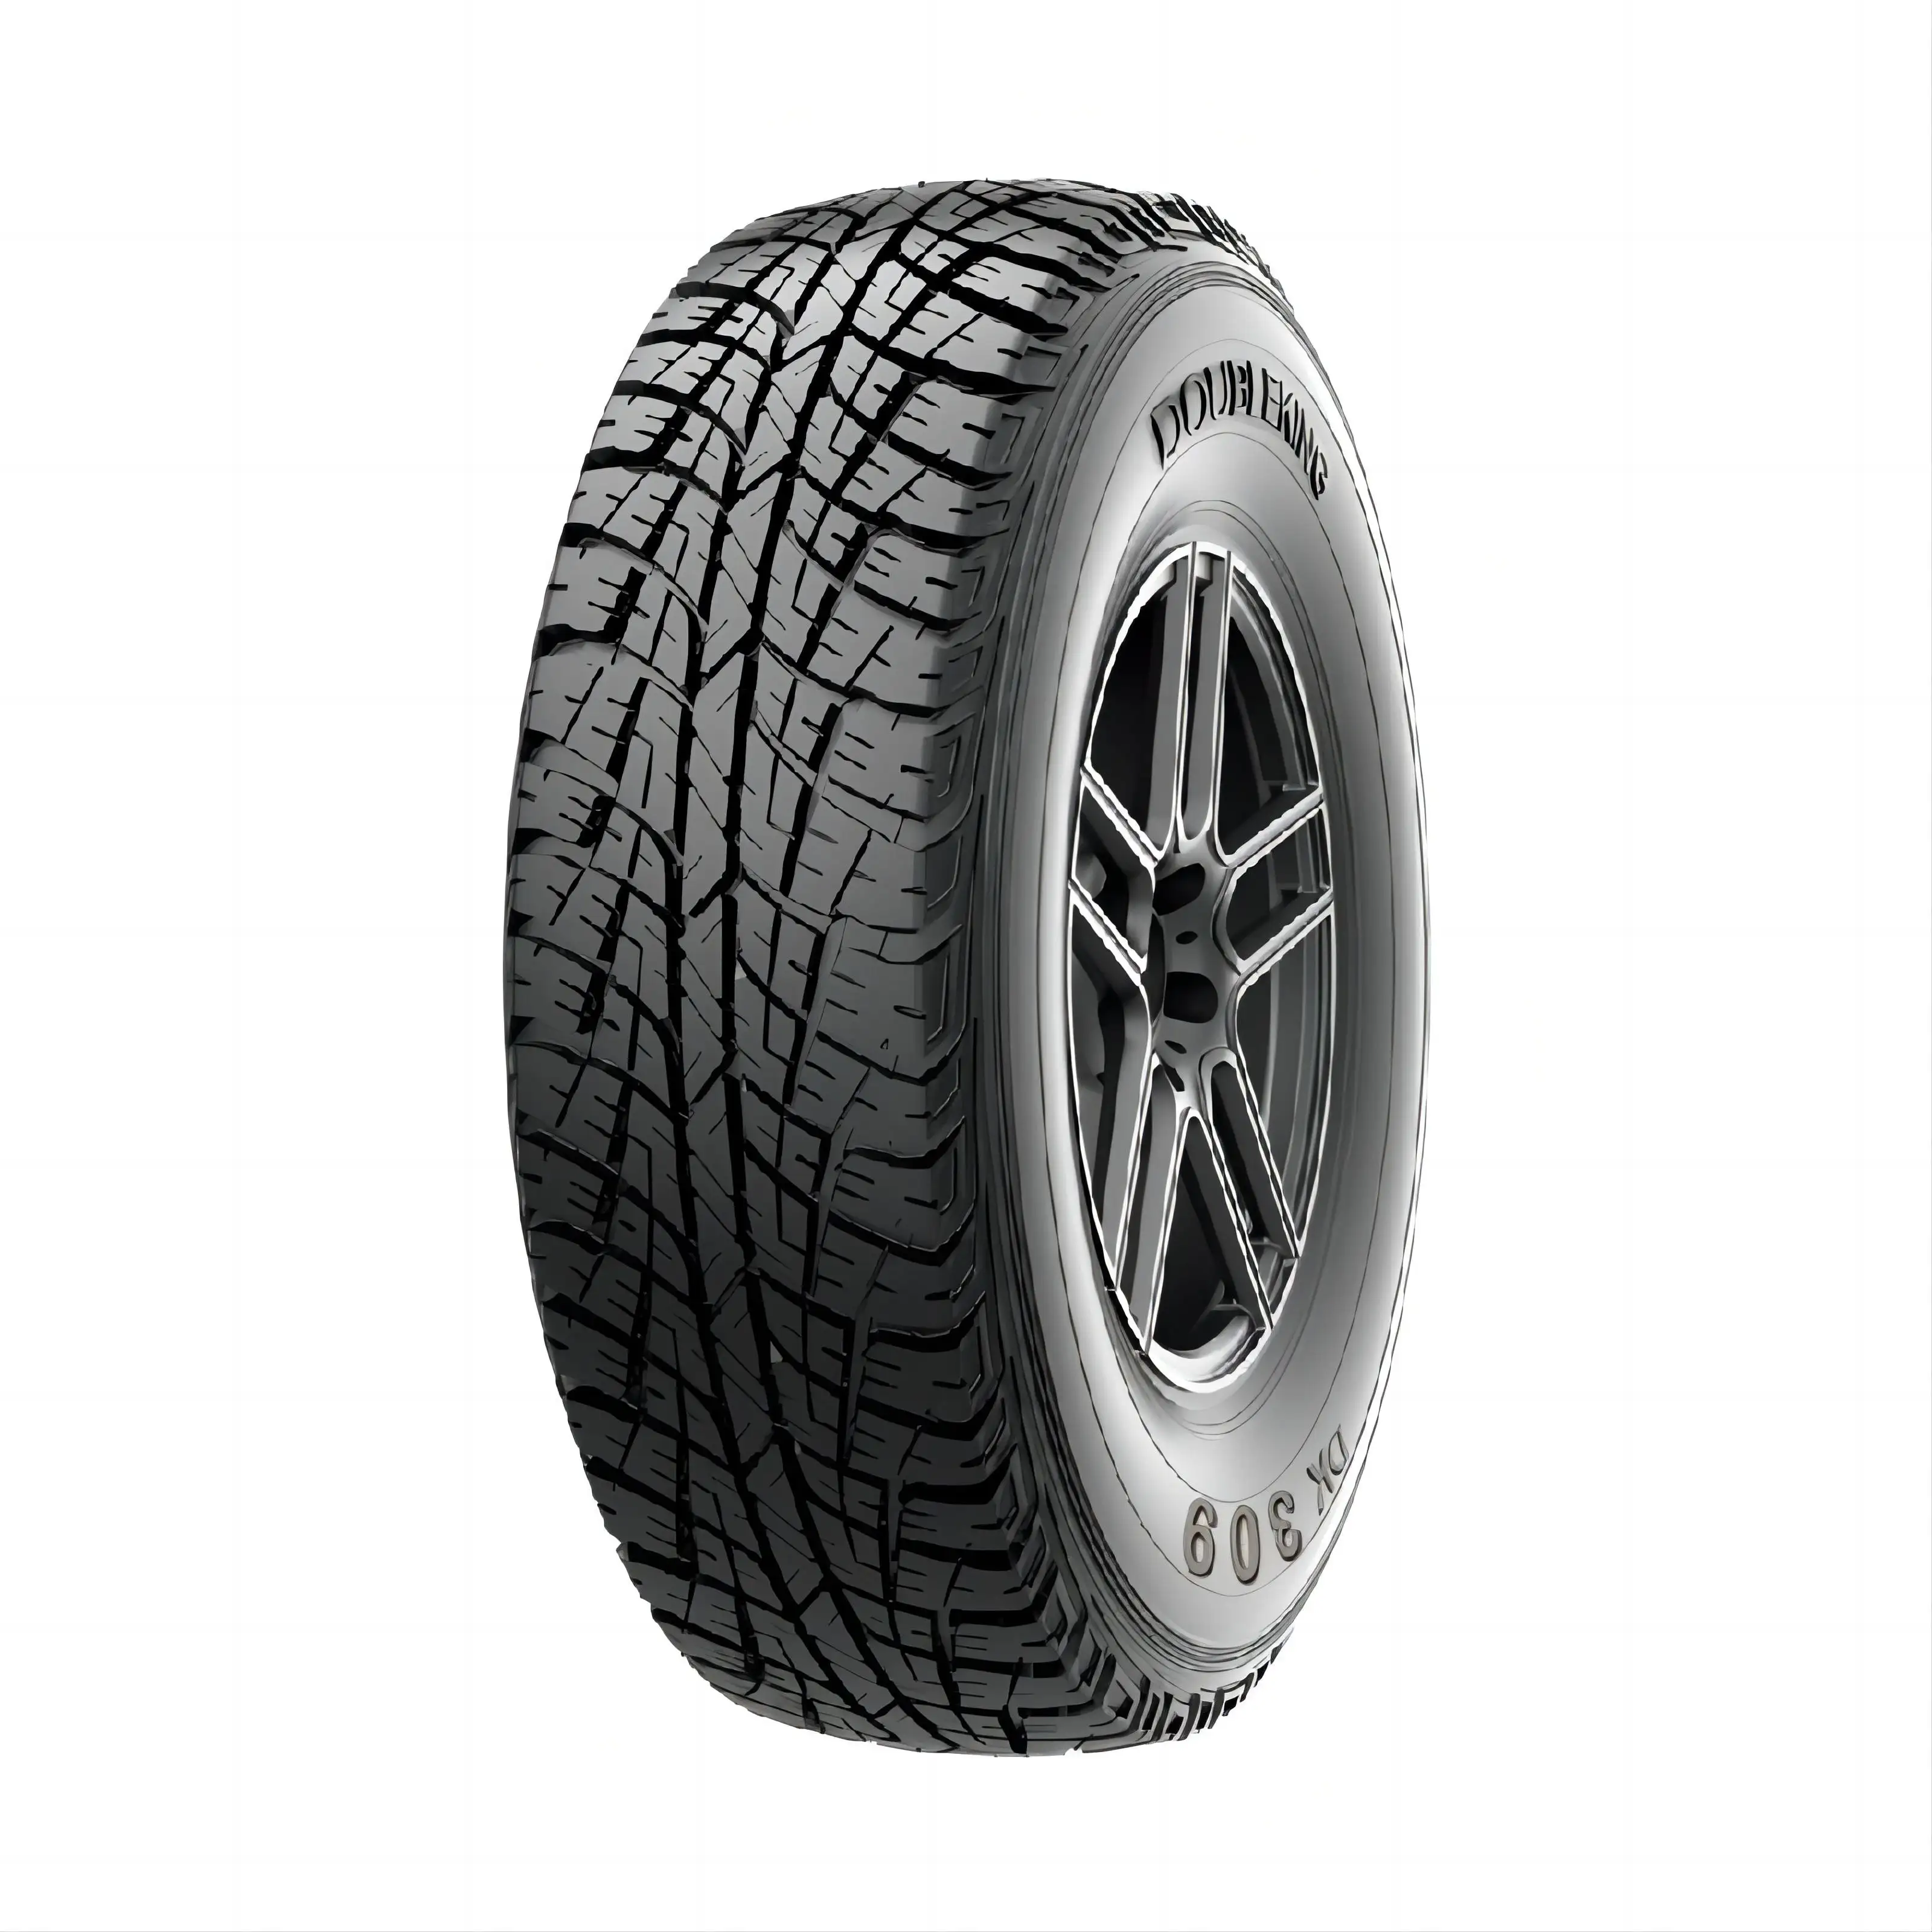 2024 Novos pneus SASO China para carros 195r15c pneus 215/75r15 235/75r15 todo terreno pneus baratos